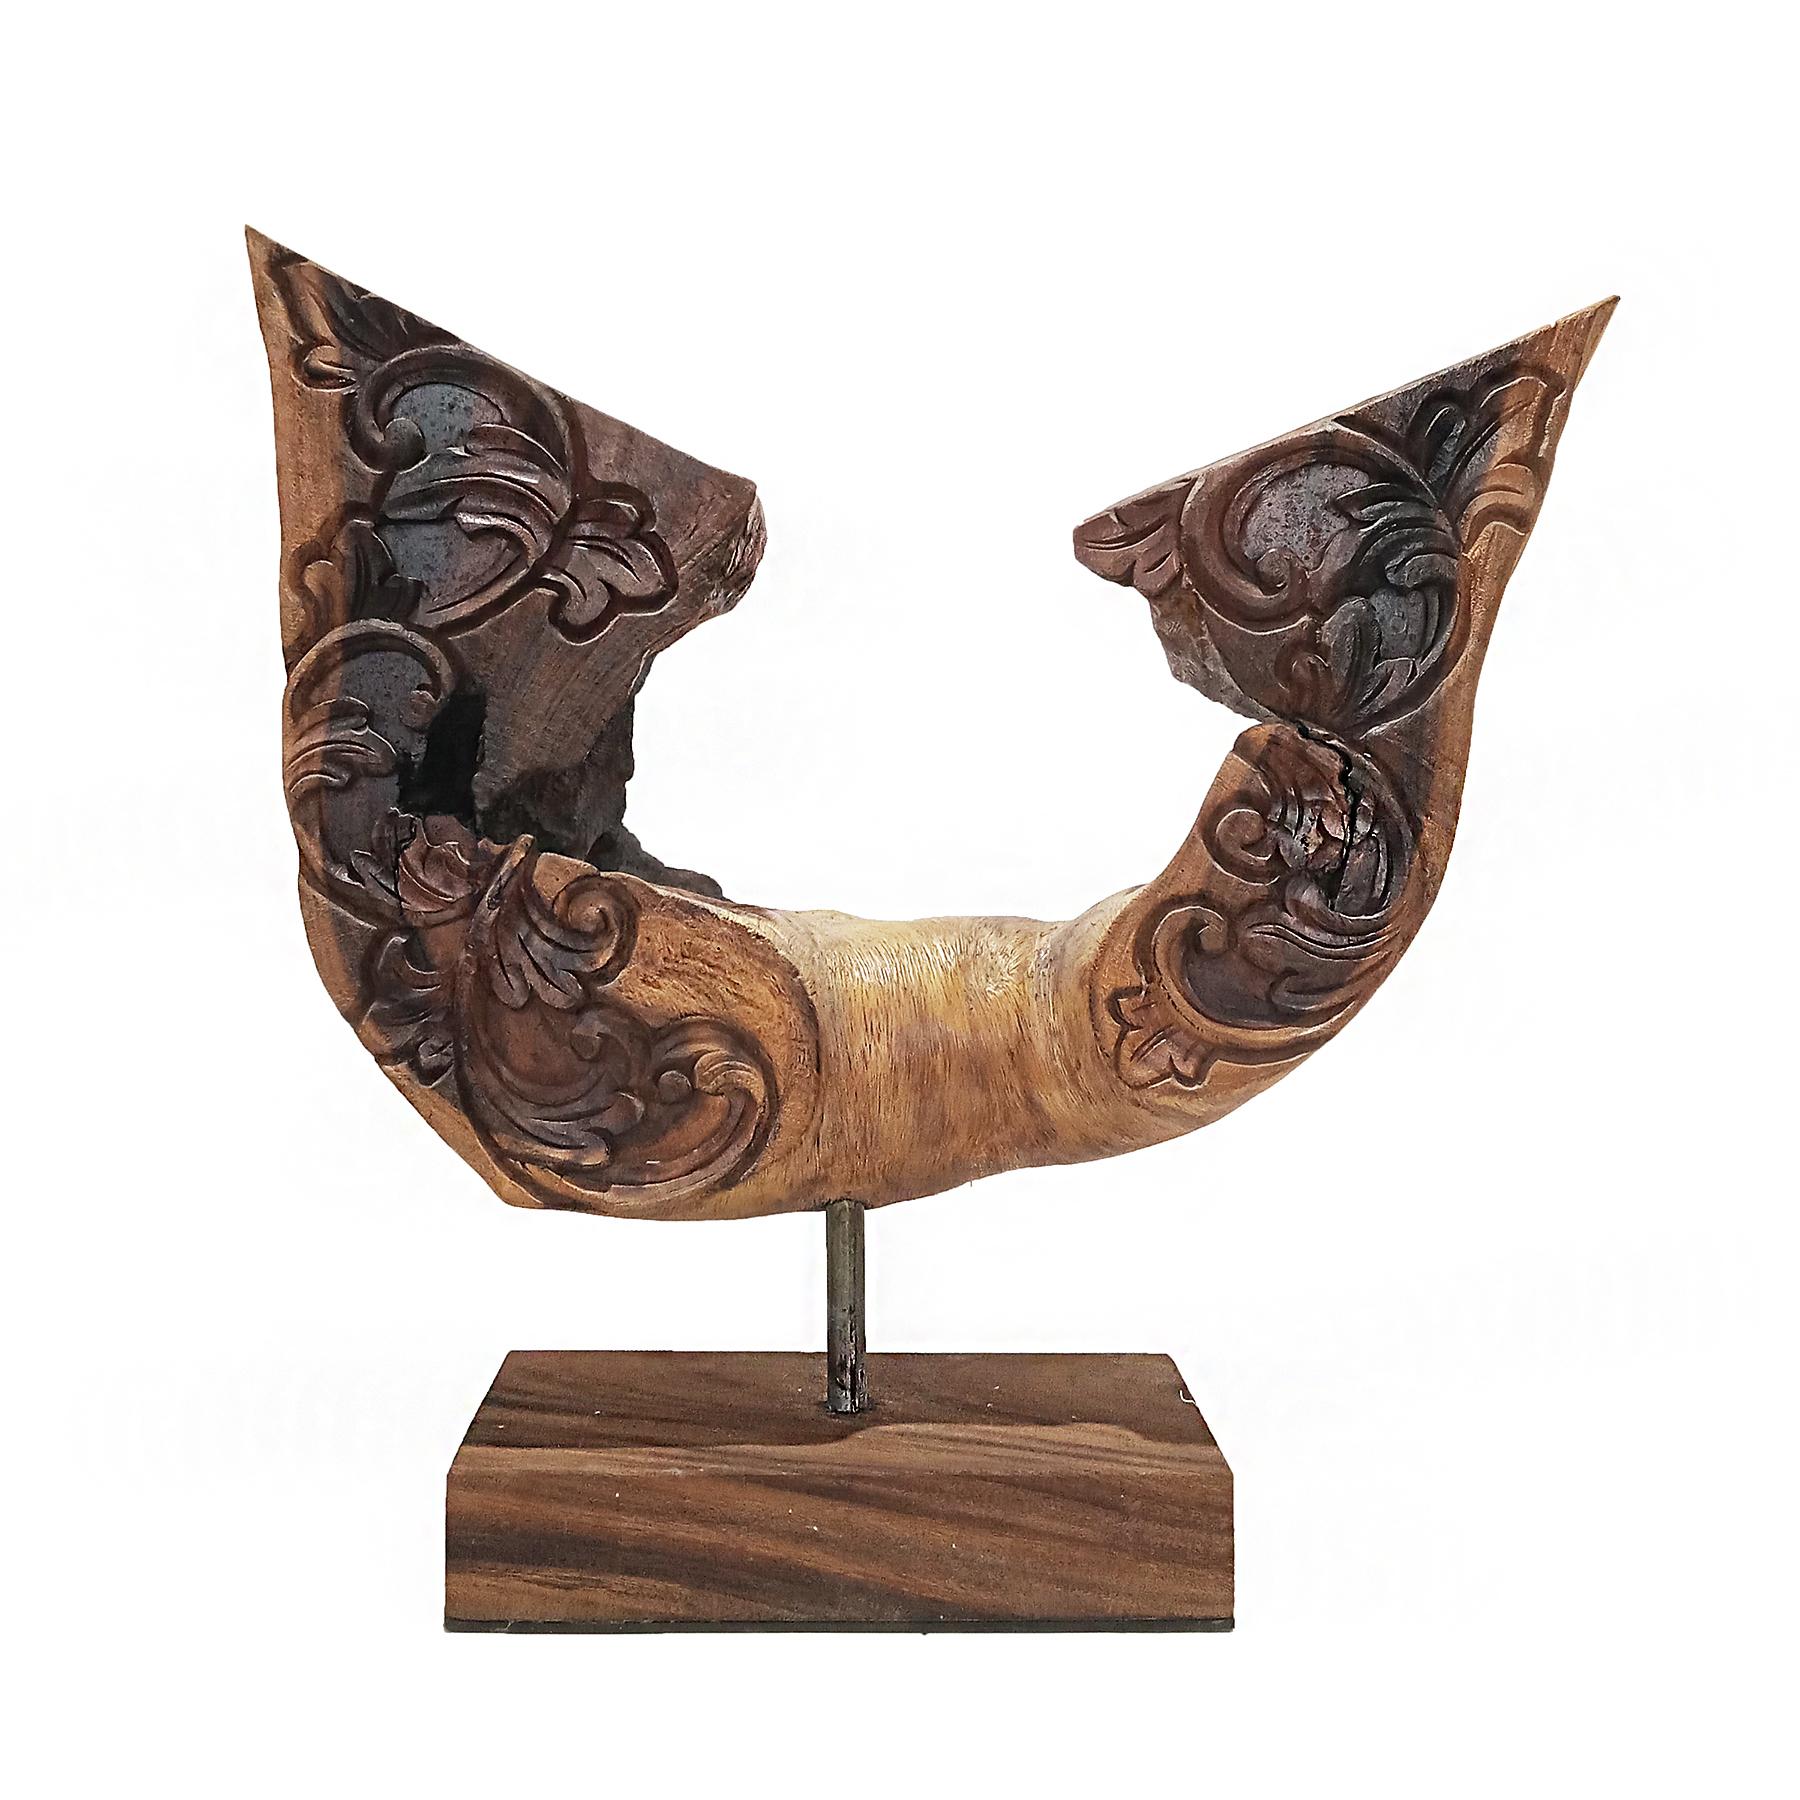 Eine Skulptur aus Altholz in Form eines Flügelpaares, handgeschnitzt in Indonesien, Ende des 20. Jahrhunderts. Das MATERIAL ist Suar-Holz (Samanea Saman oder Monkeywood), das für seine schöne Maserung, Textur und Farbe bekannt ist. 

Montiert auf